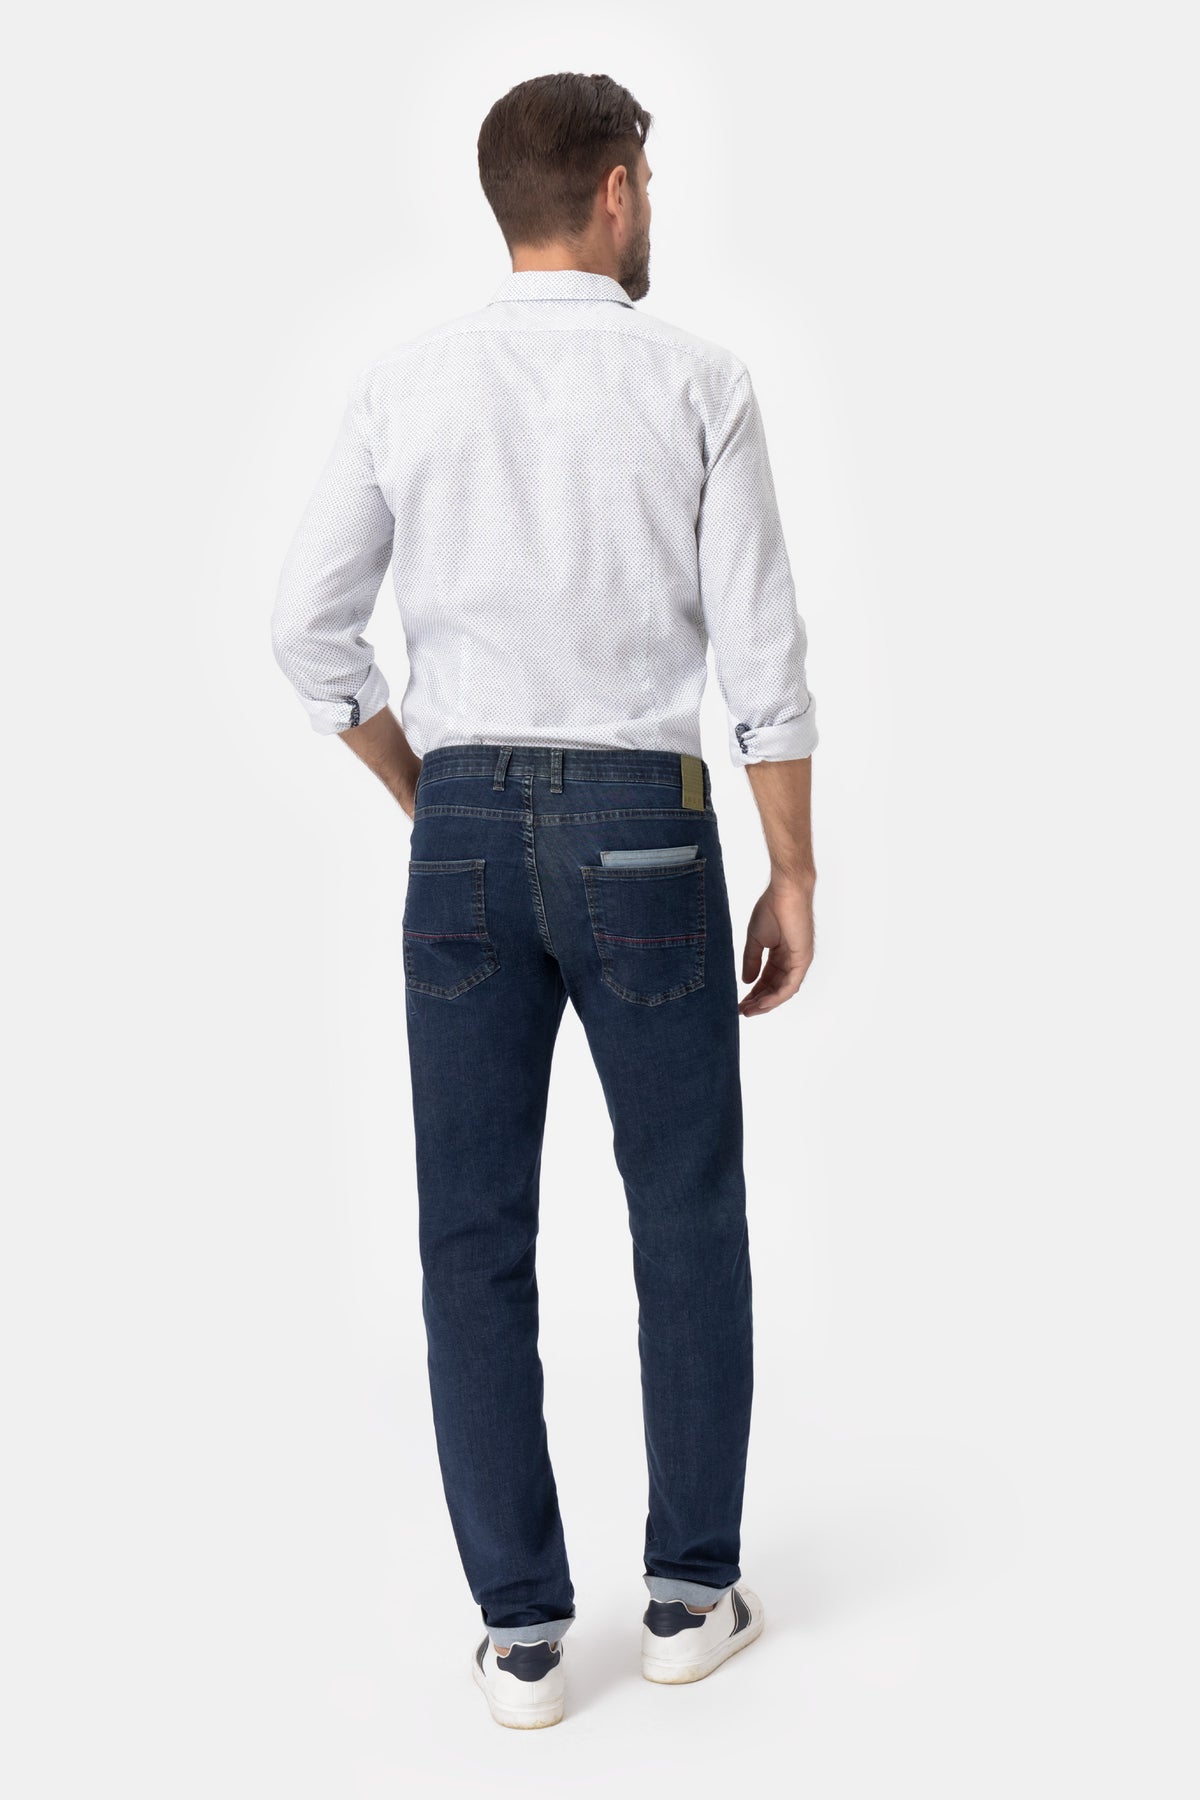 Mauri Sn310 Jeans in denim di cotone stretch